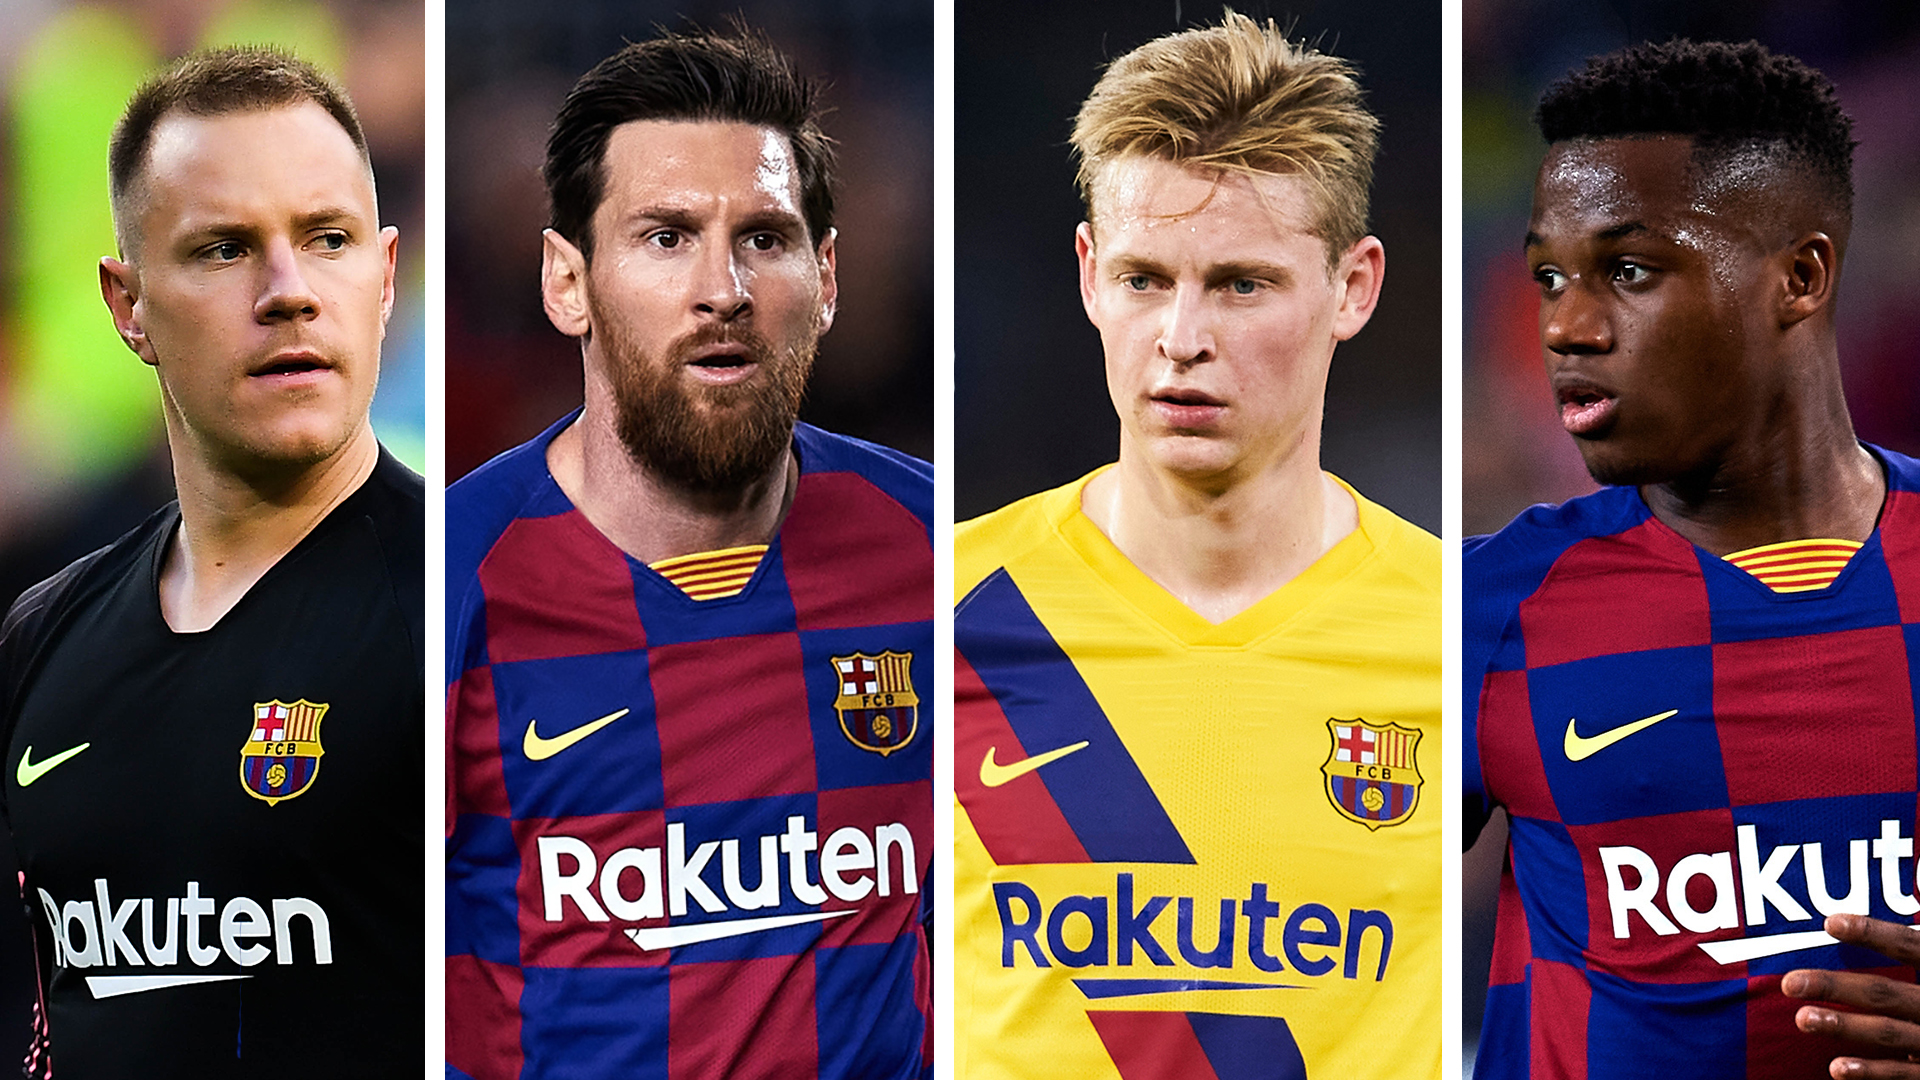 Messi 2e, Griezmann 18e, l’étonnant classement des joueurs du Barça cette saison (Sondage Marca)